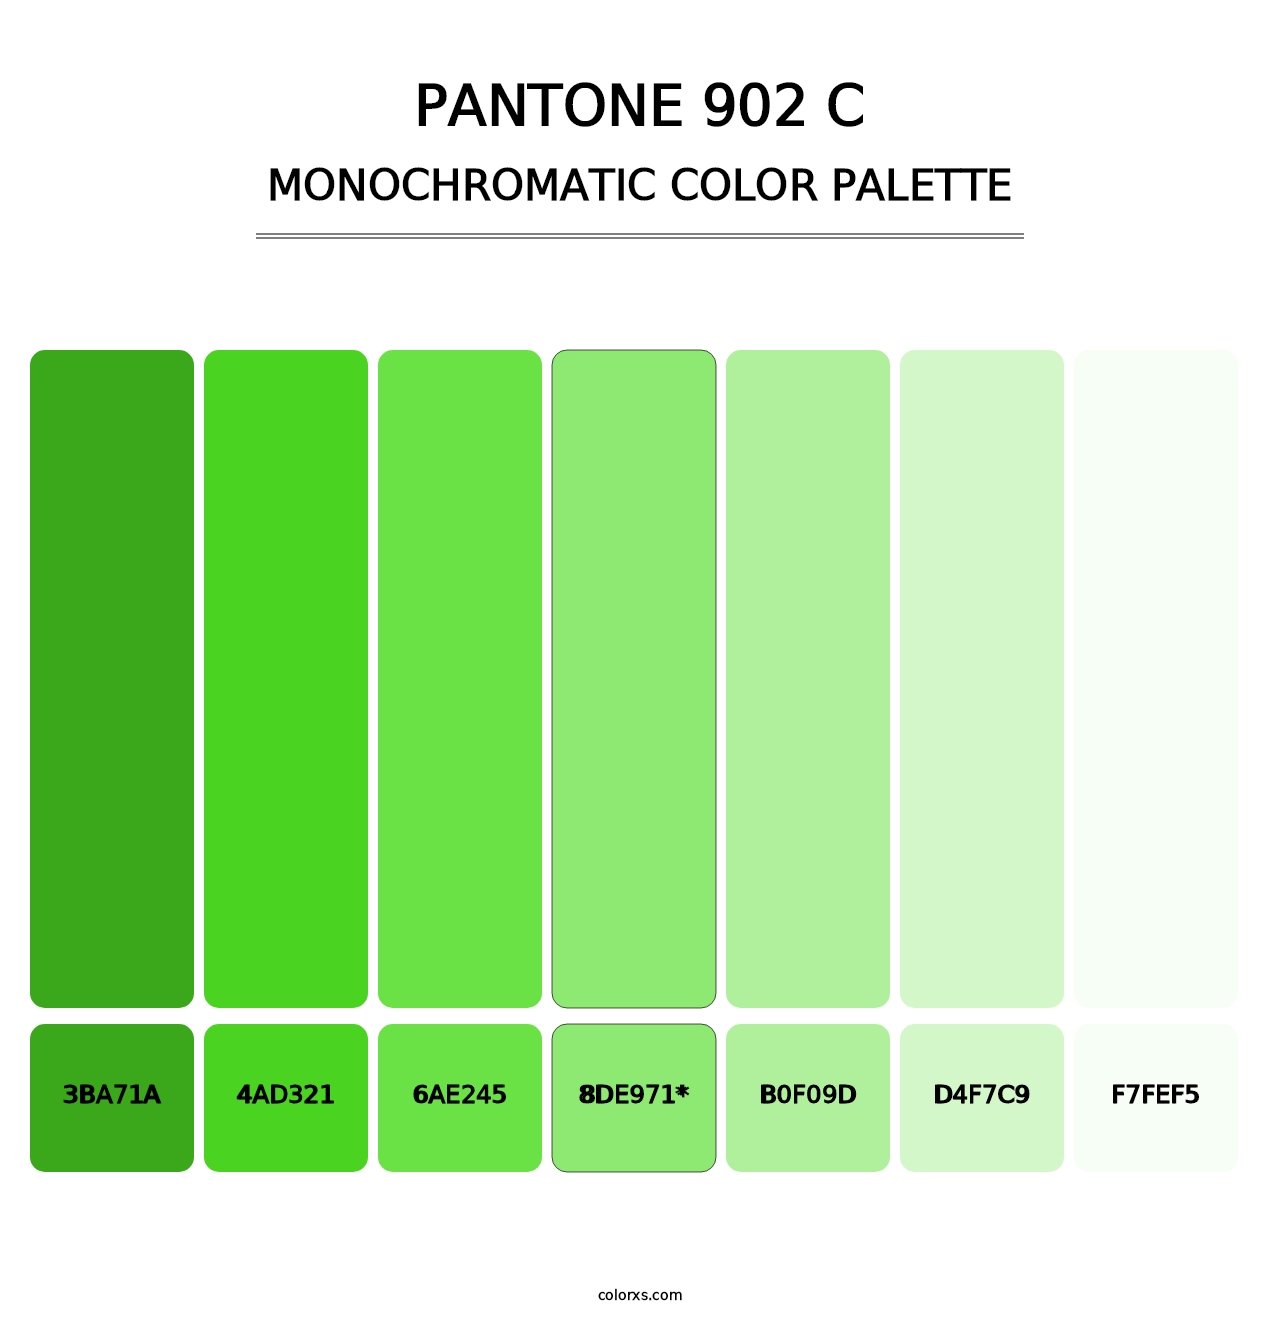 PANTONE 902 C - Monochromatic Color Palette